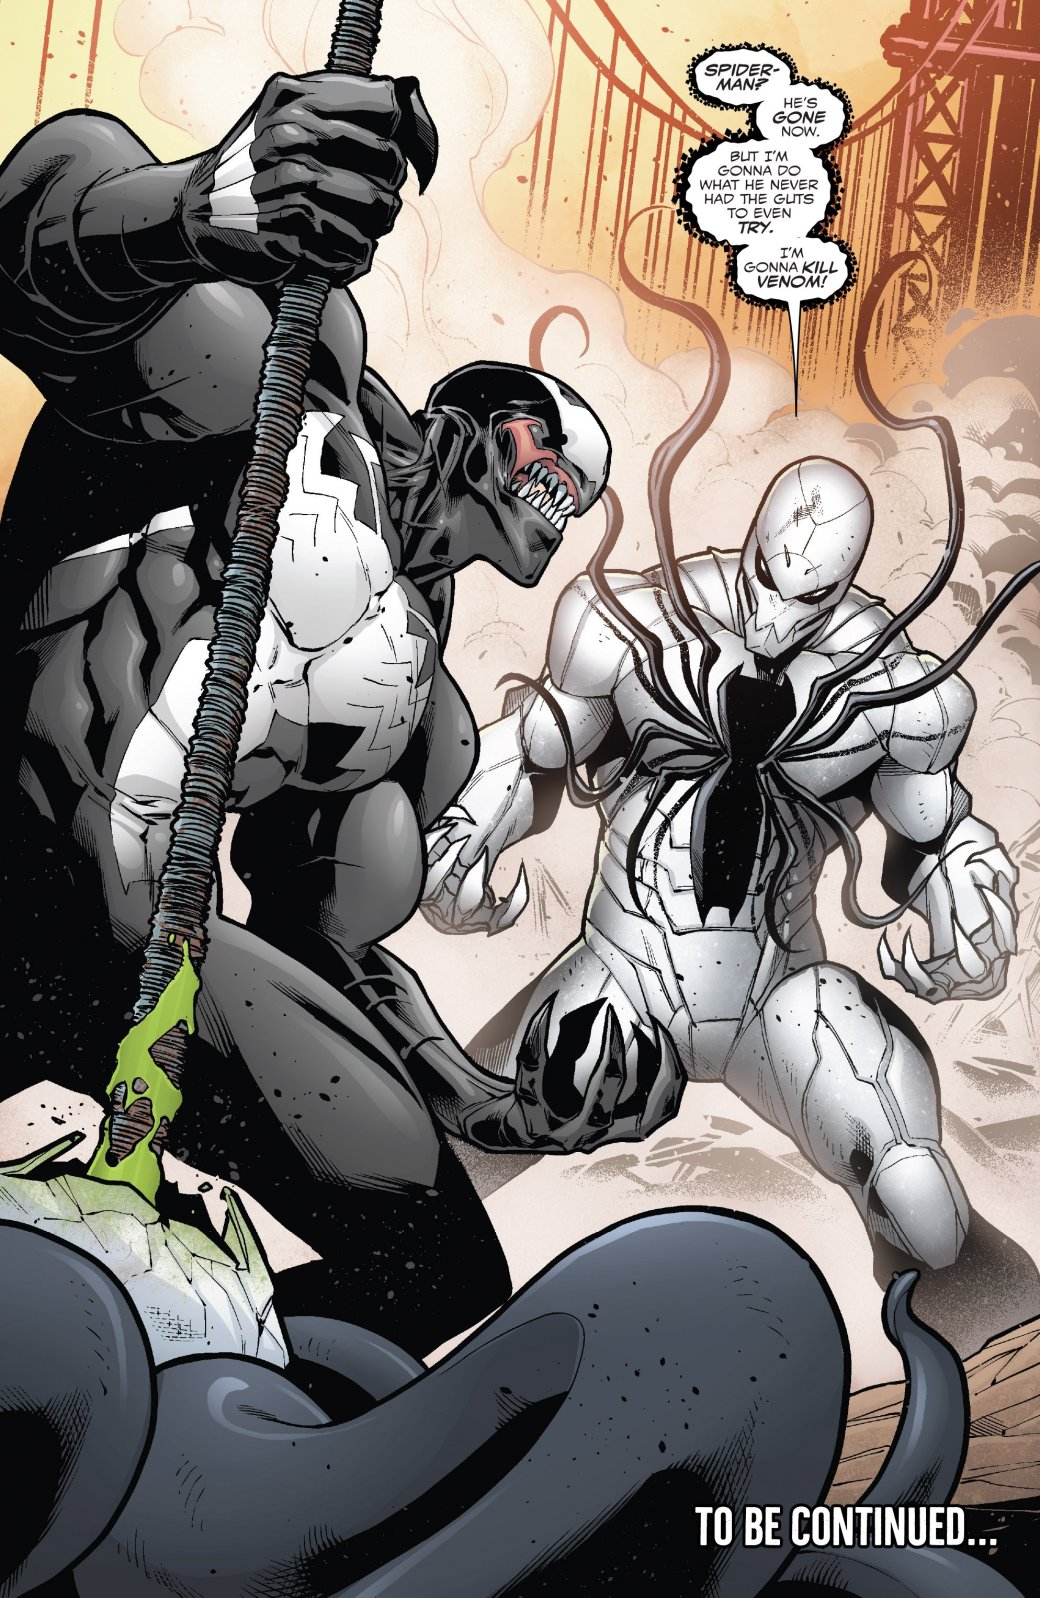 Venomverse: с кем и почему сражаются симбиоты Веномы?. - Изображение 3